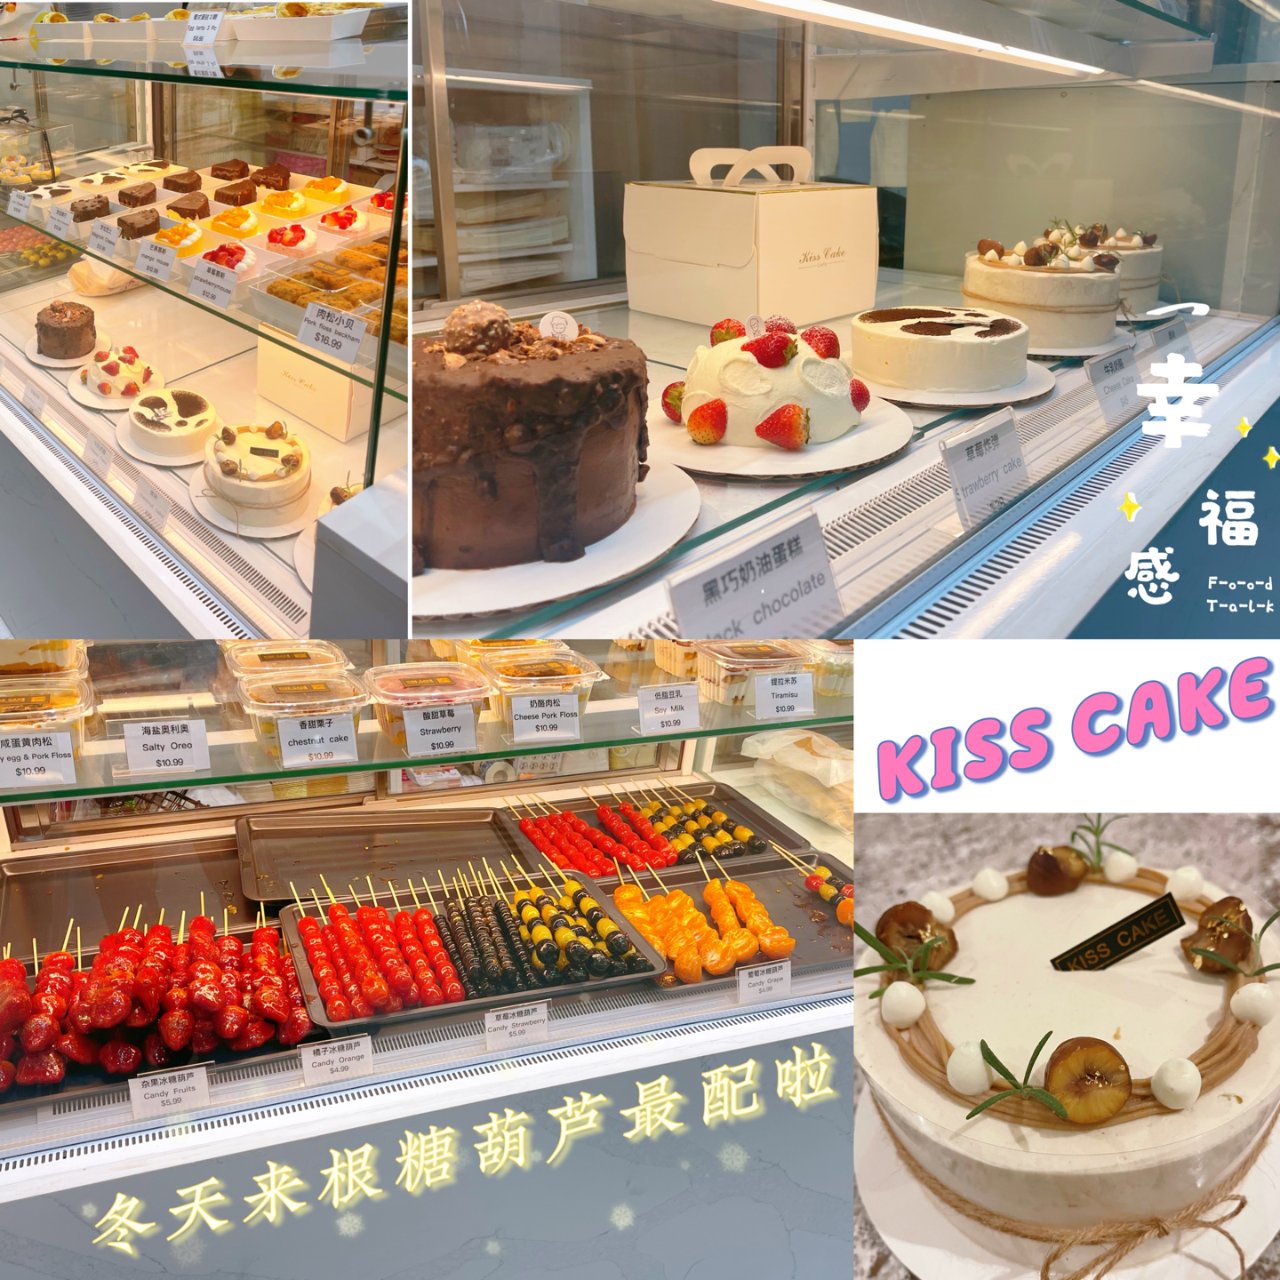 冬季卷甜品探店丨糖葫芦和栗子蛋糕很配哦🍓...